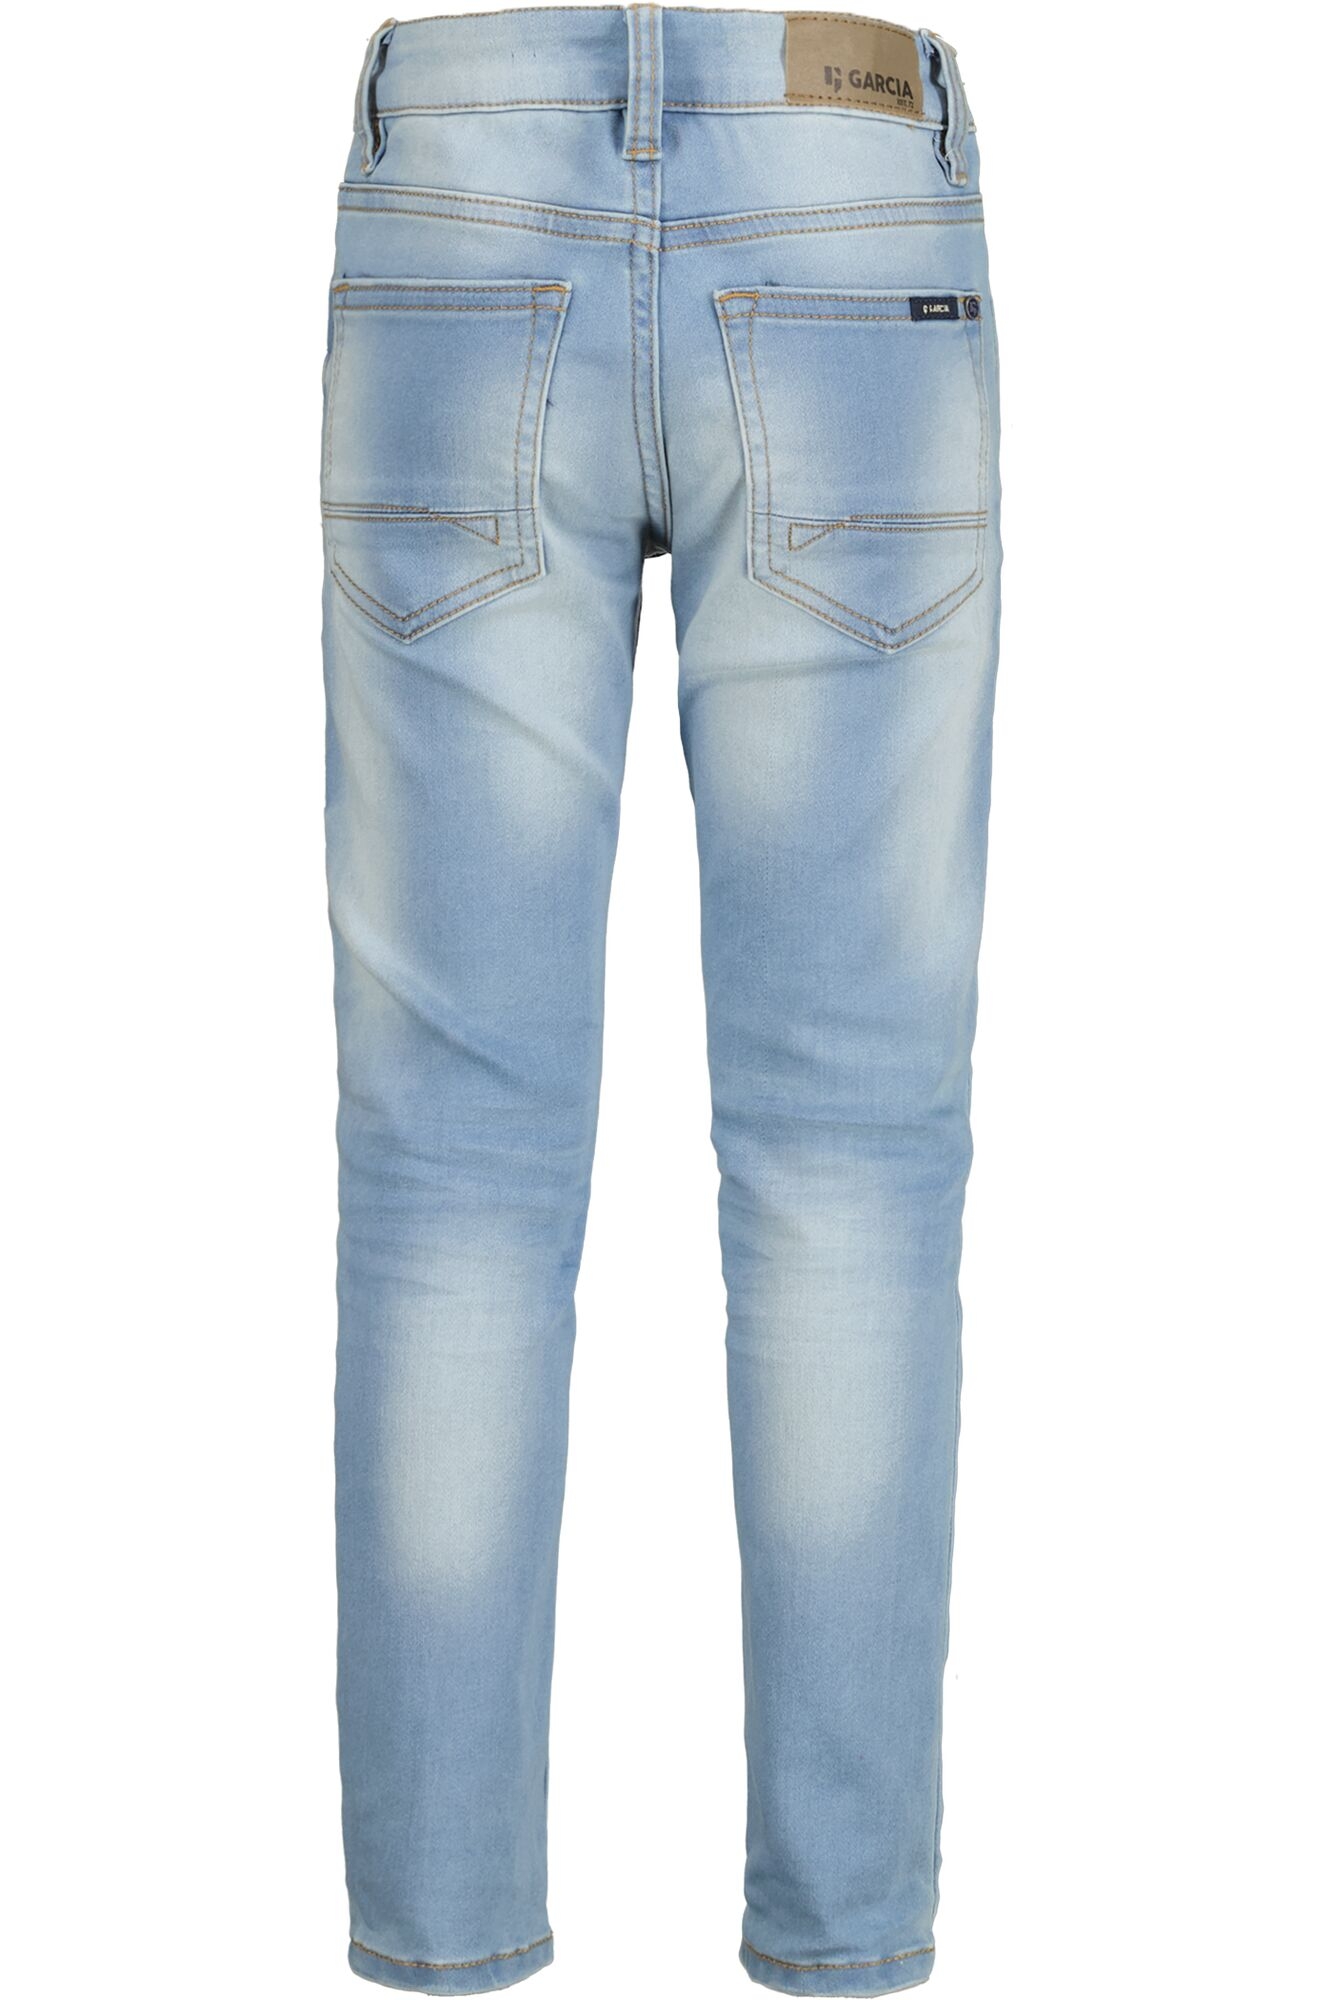 Xevi WÖHRL GARCIA Jeans 370 | kaufen 10711373